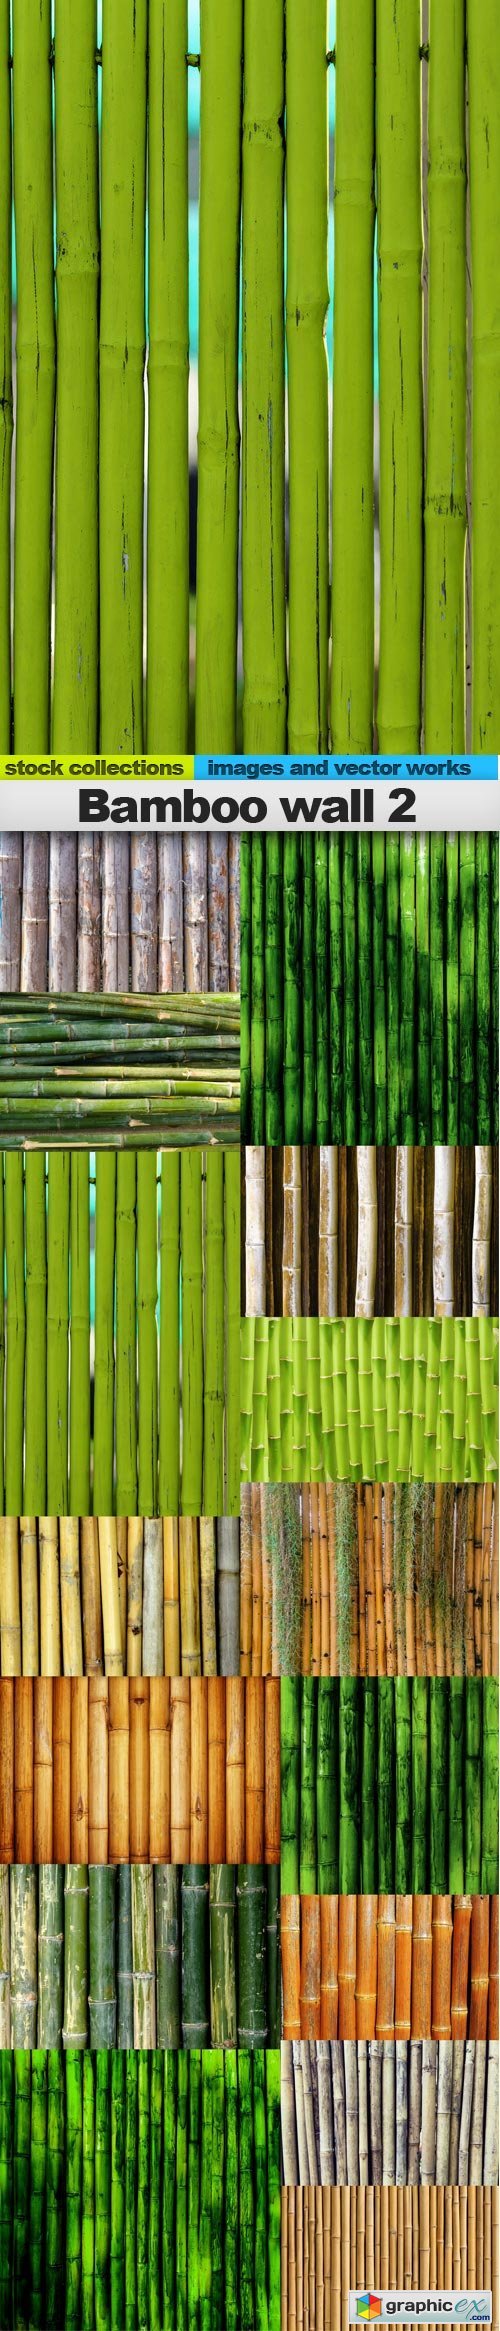 Bamboo wall 2, 15 x UHQ JPEG